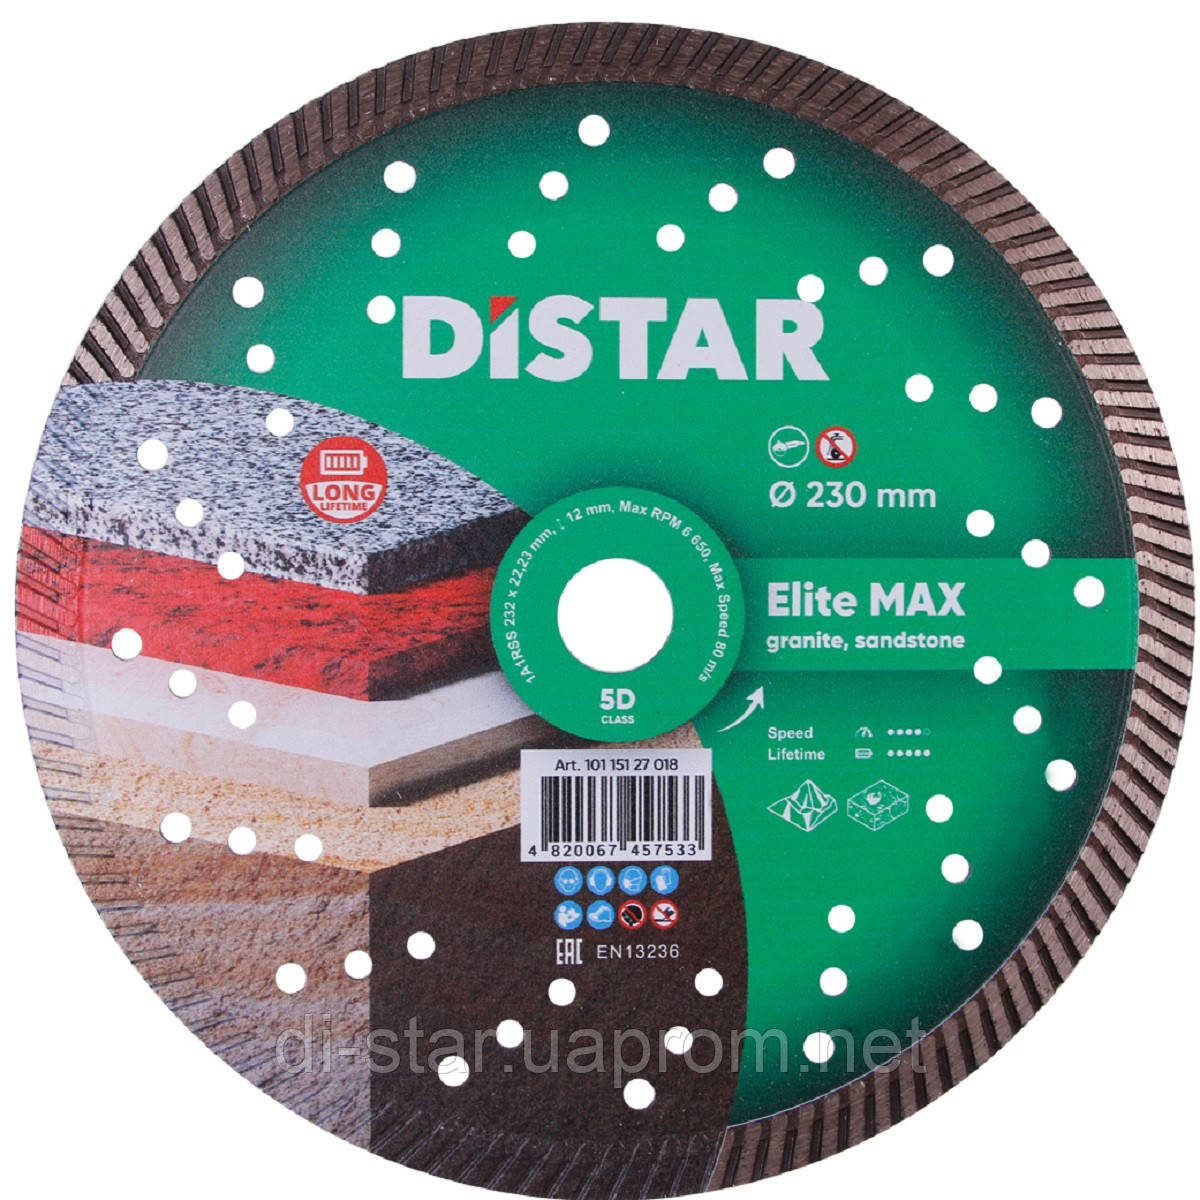 Круг алмазний 232 мм Distar Turbo Elite Max 5D відрізний диск по граніту та мармуру для КШМ, Дістар (10115127018)